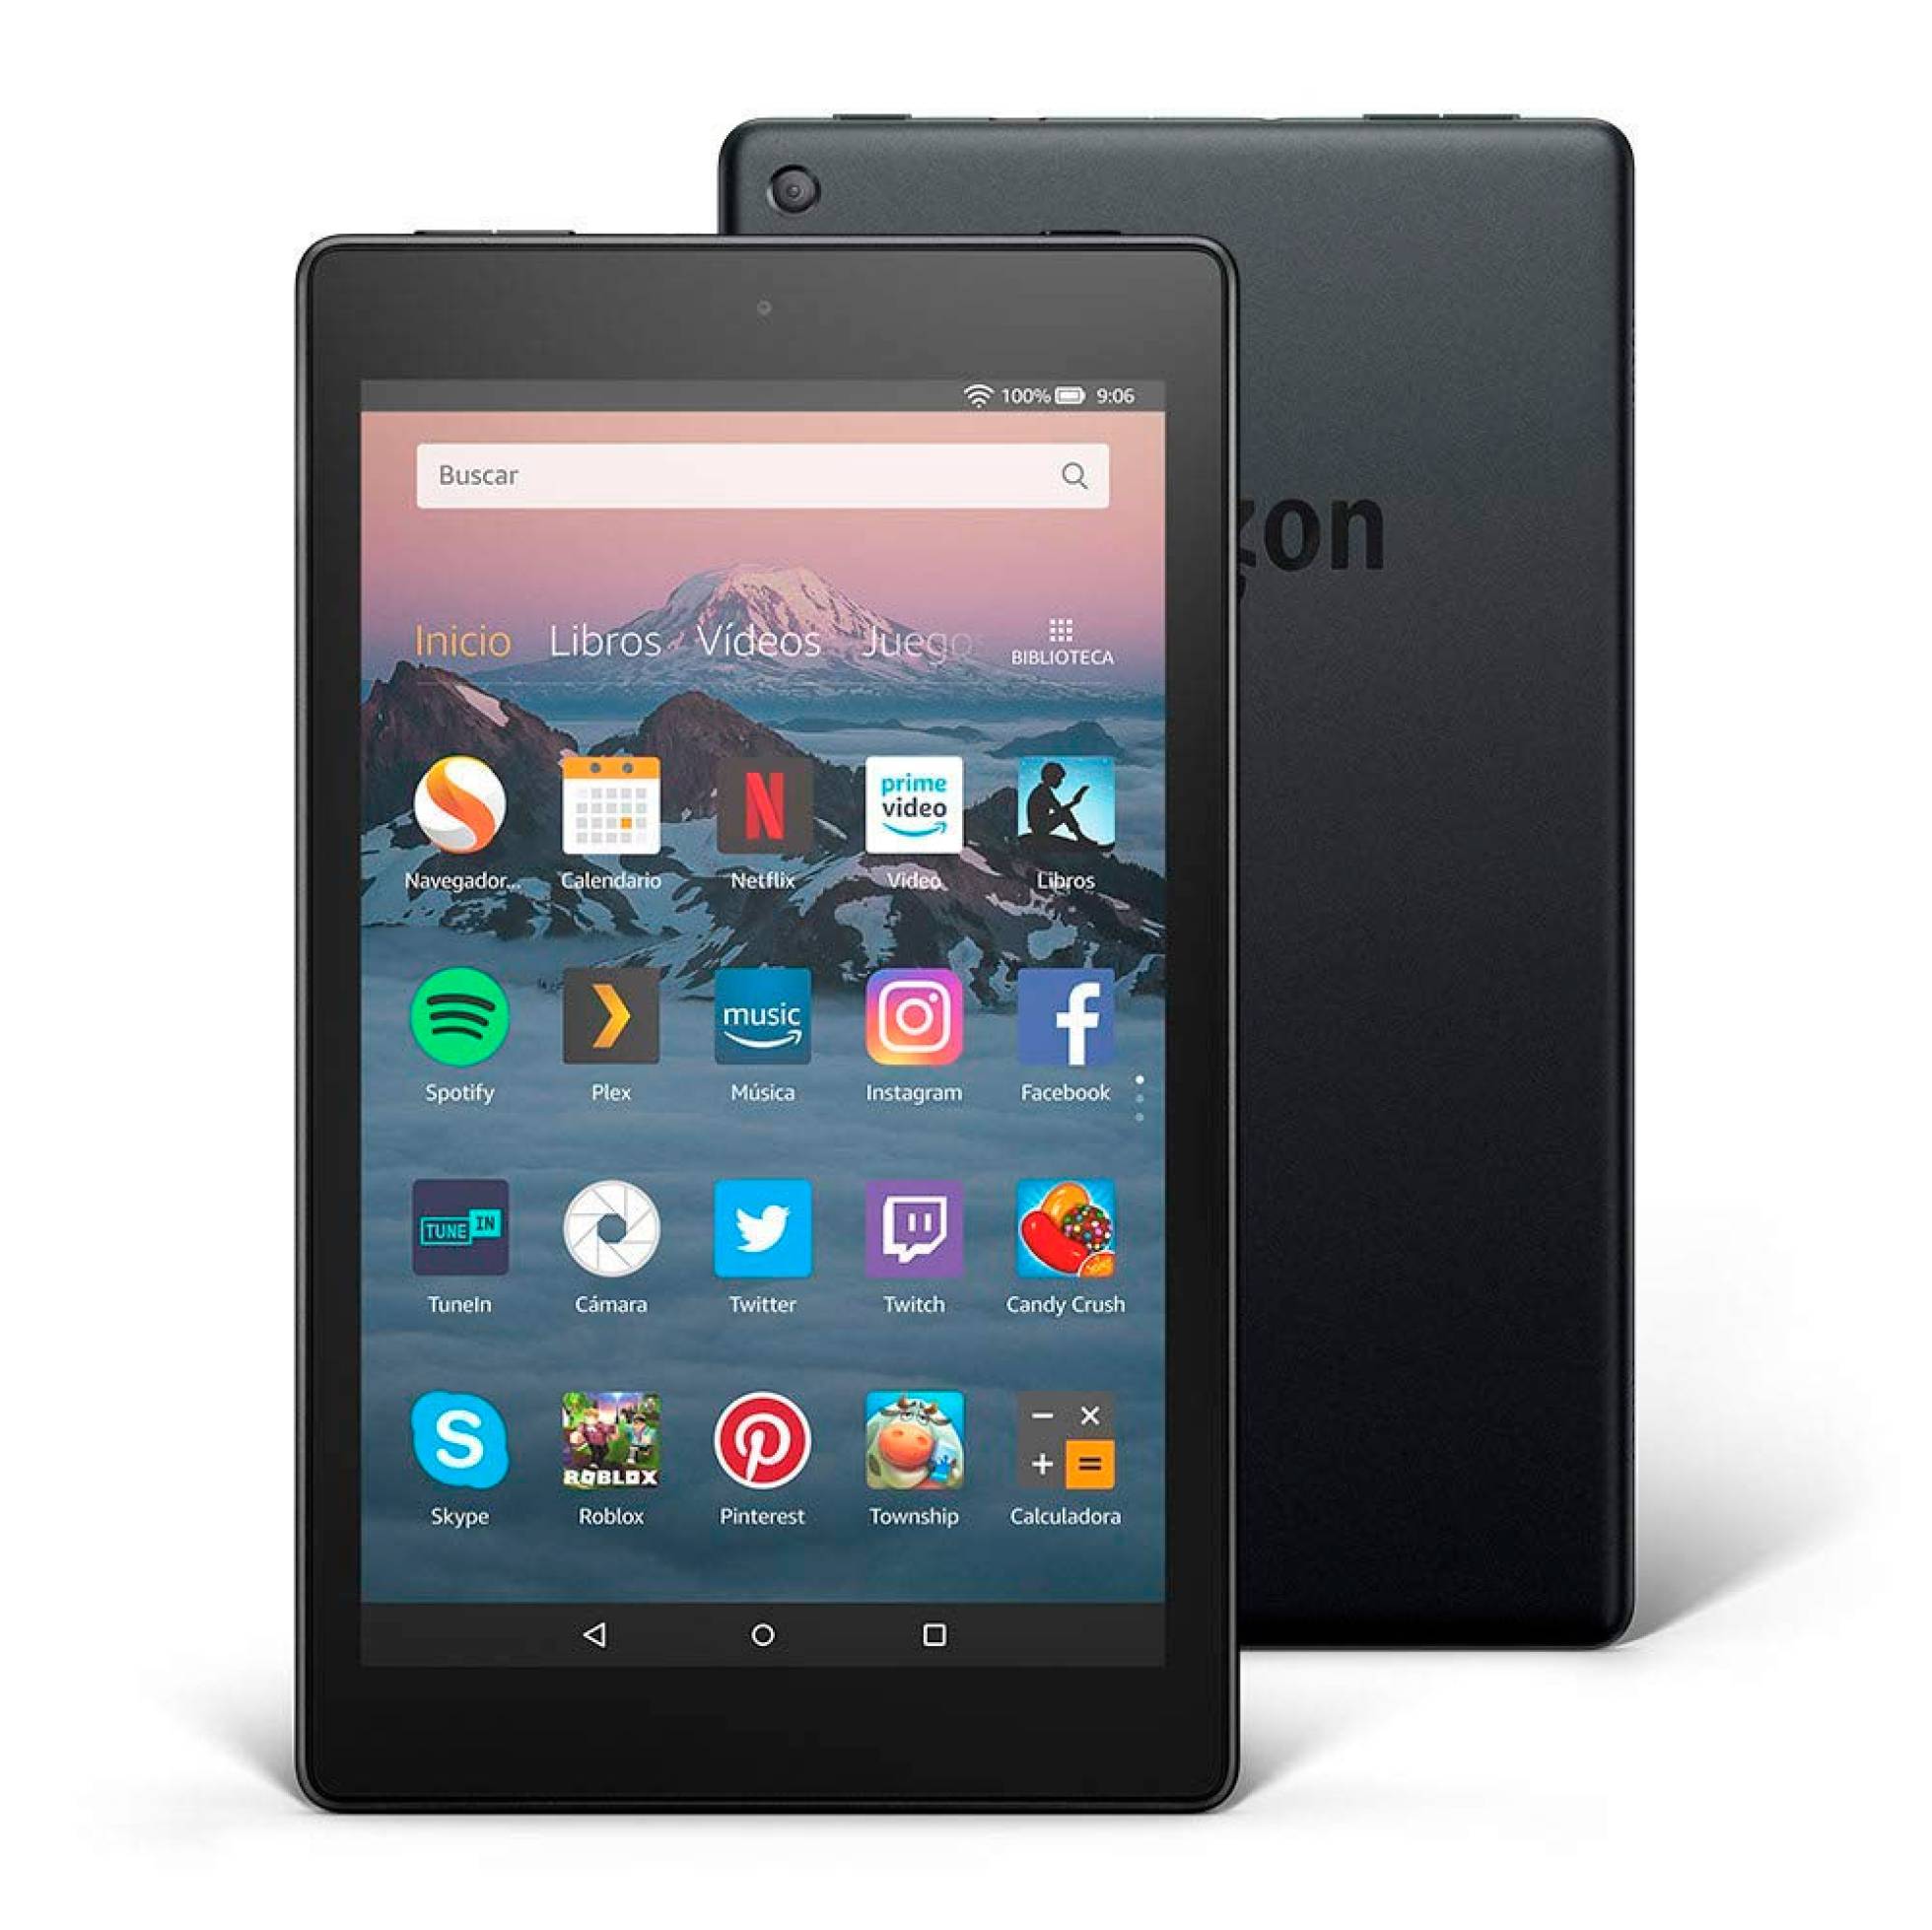 Amazon Lanza La Nueva Tableta Fire Hd 8 En España Por 99€ Tablets